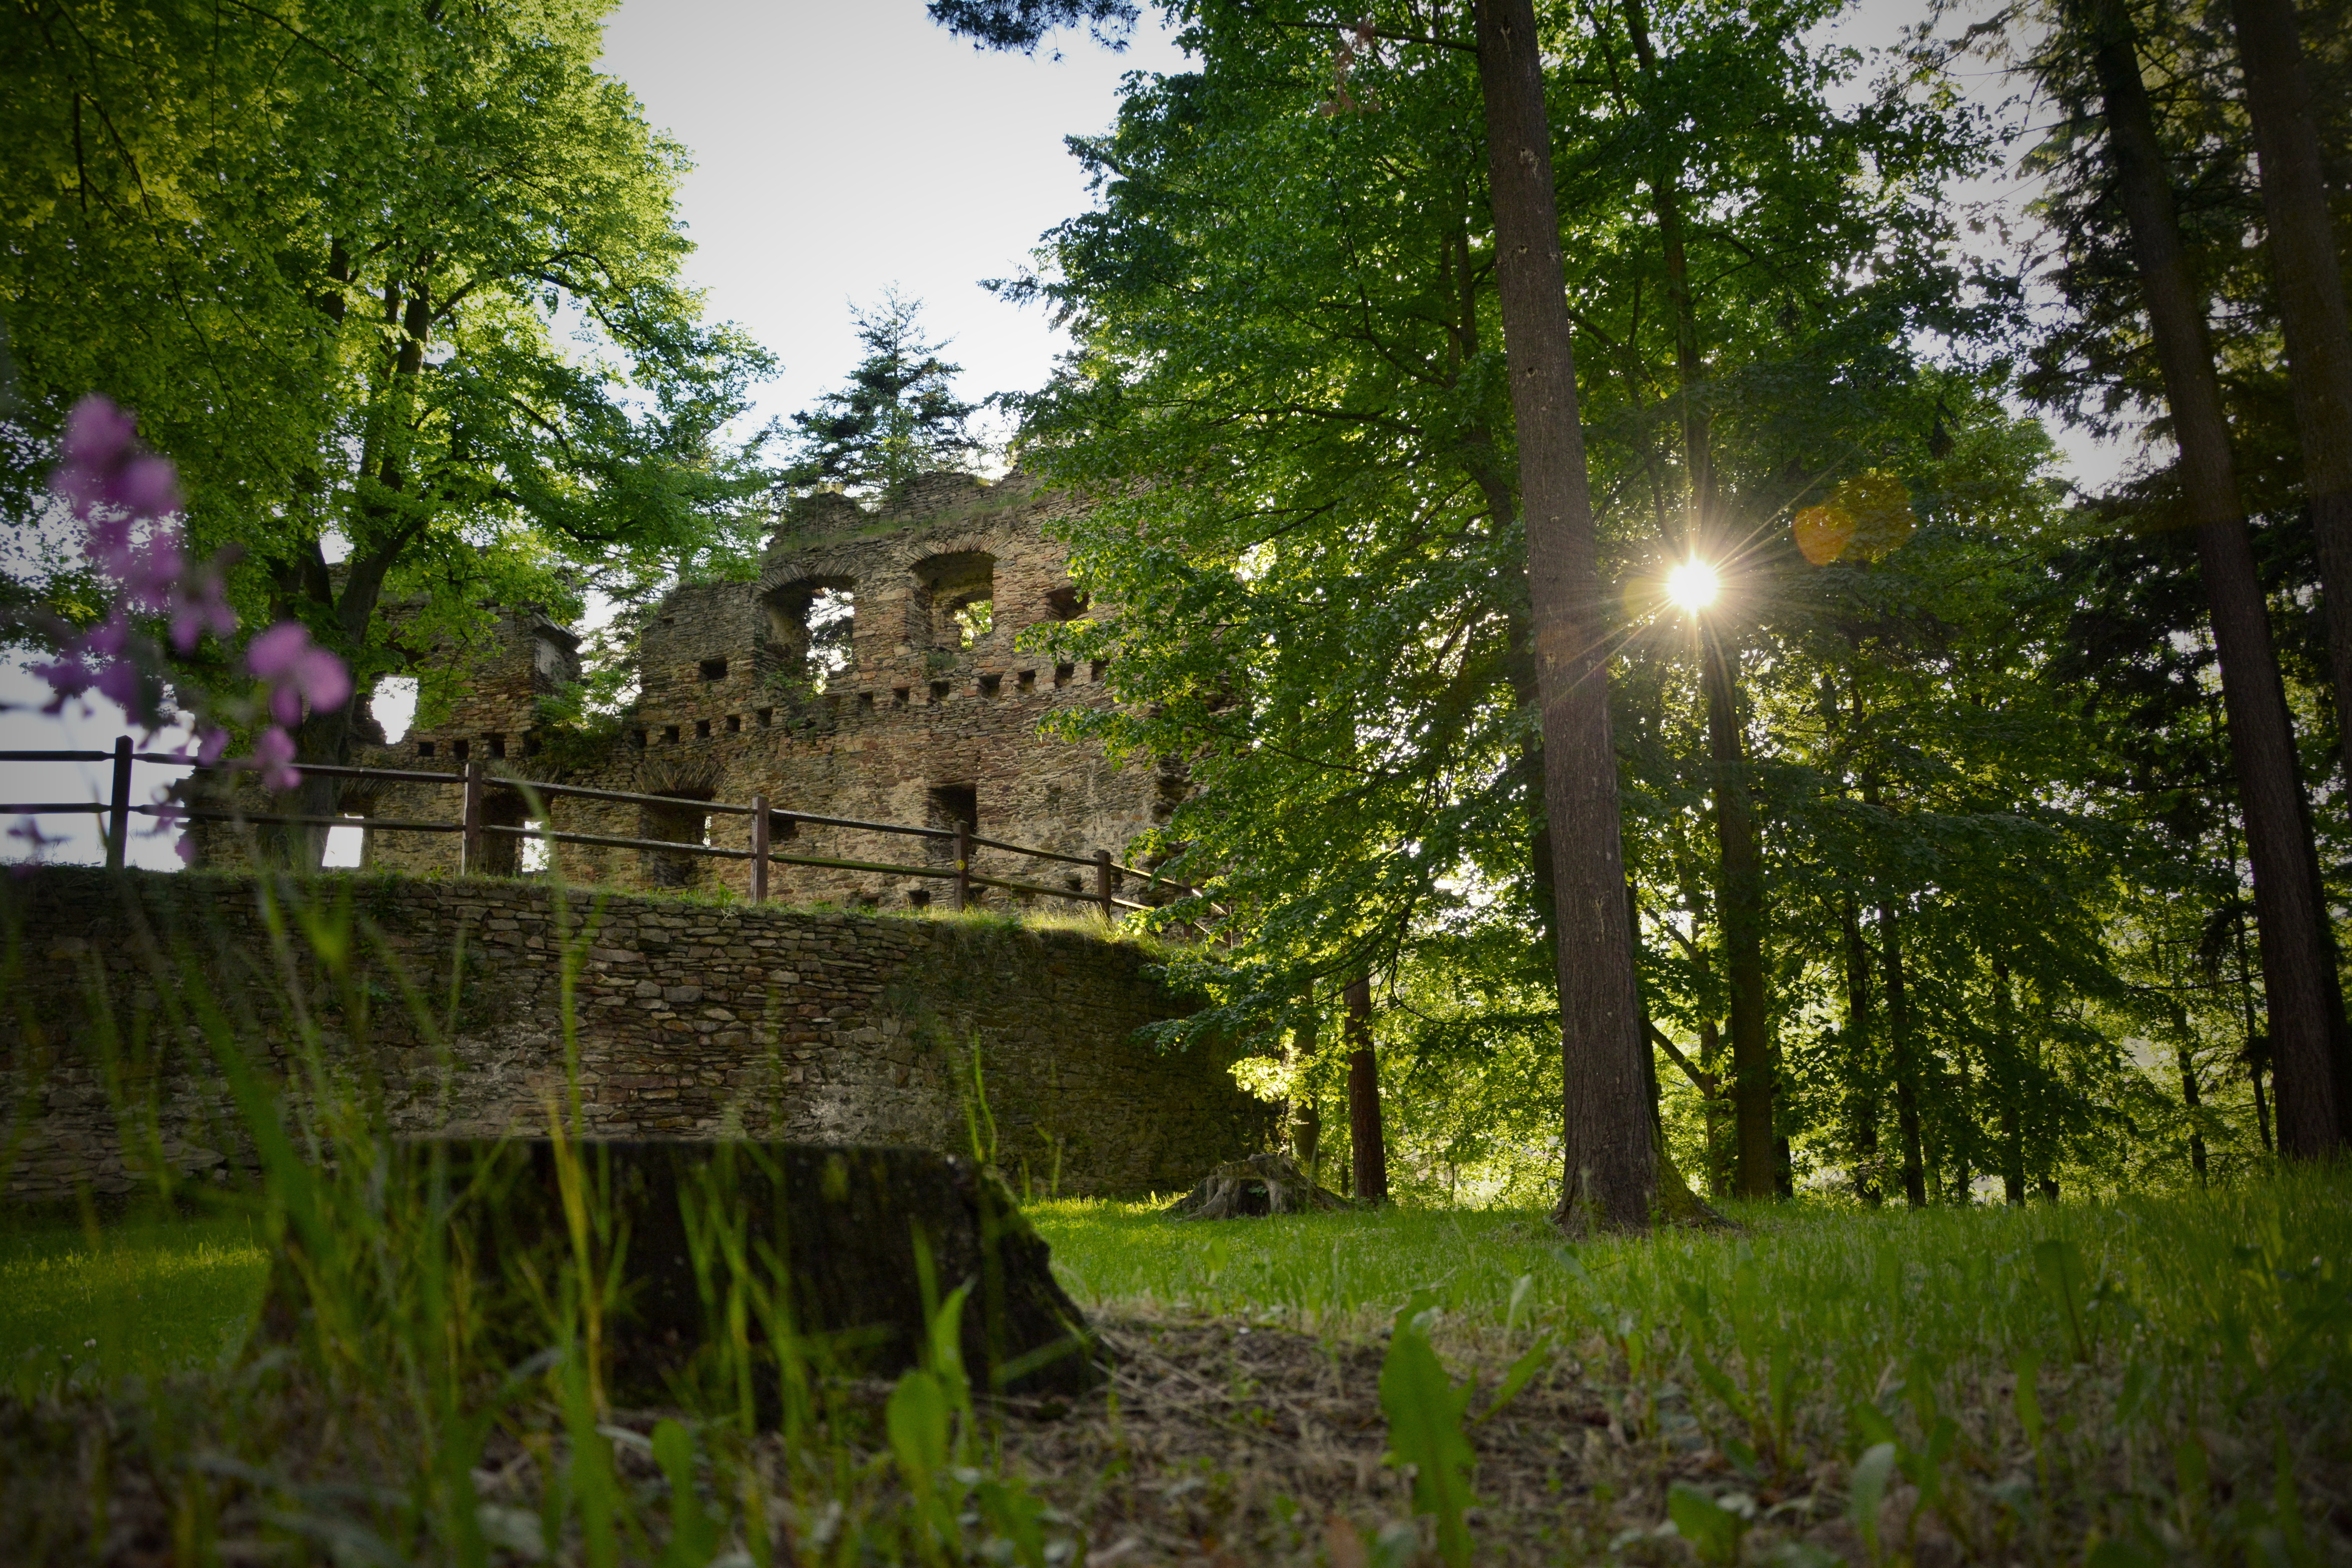 Zajímavé lokality k navštívení- zřícenina hradu v Dalečíně jiný pohled